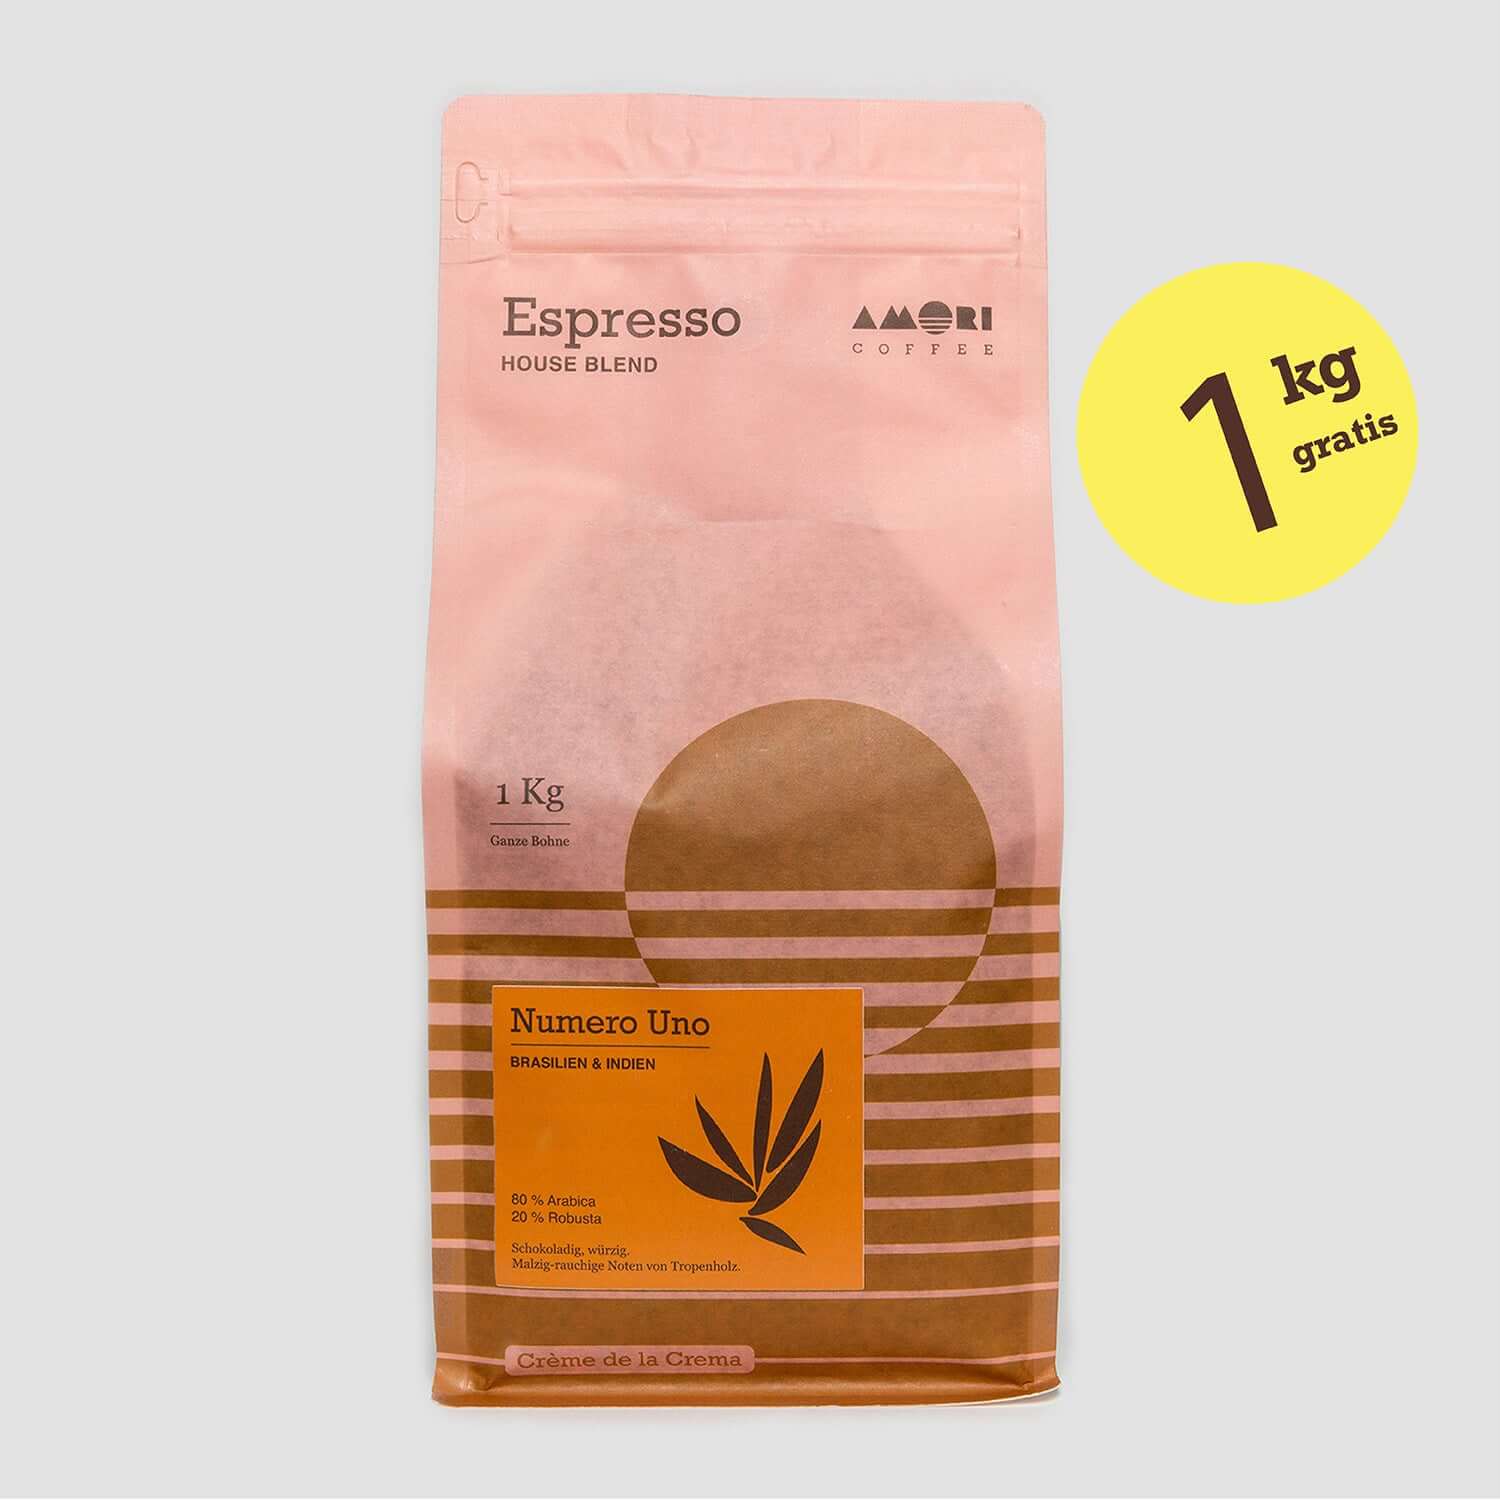 1 kg Espresso Numero Uno von AMORI gratis beim Kauf einer Erueka Mignon Libra.